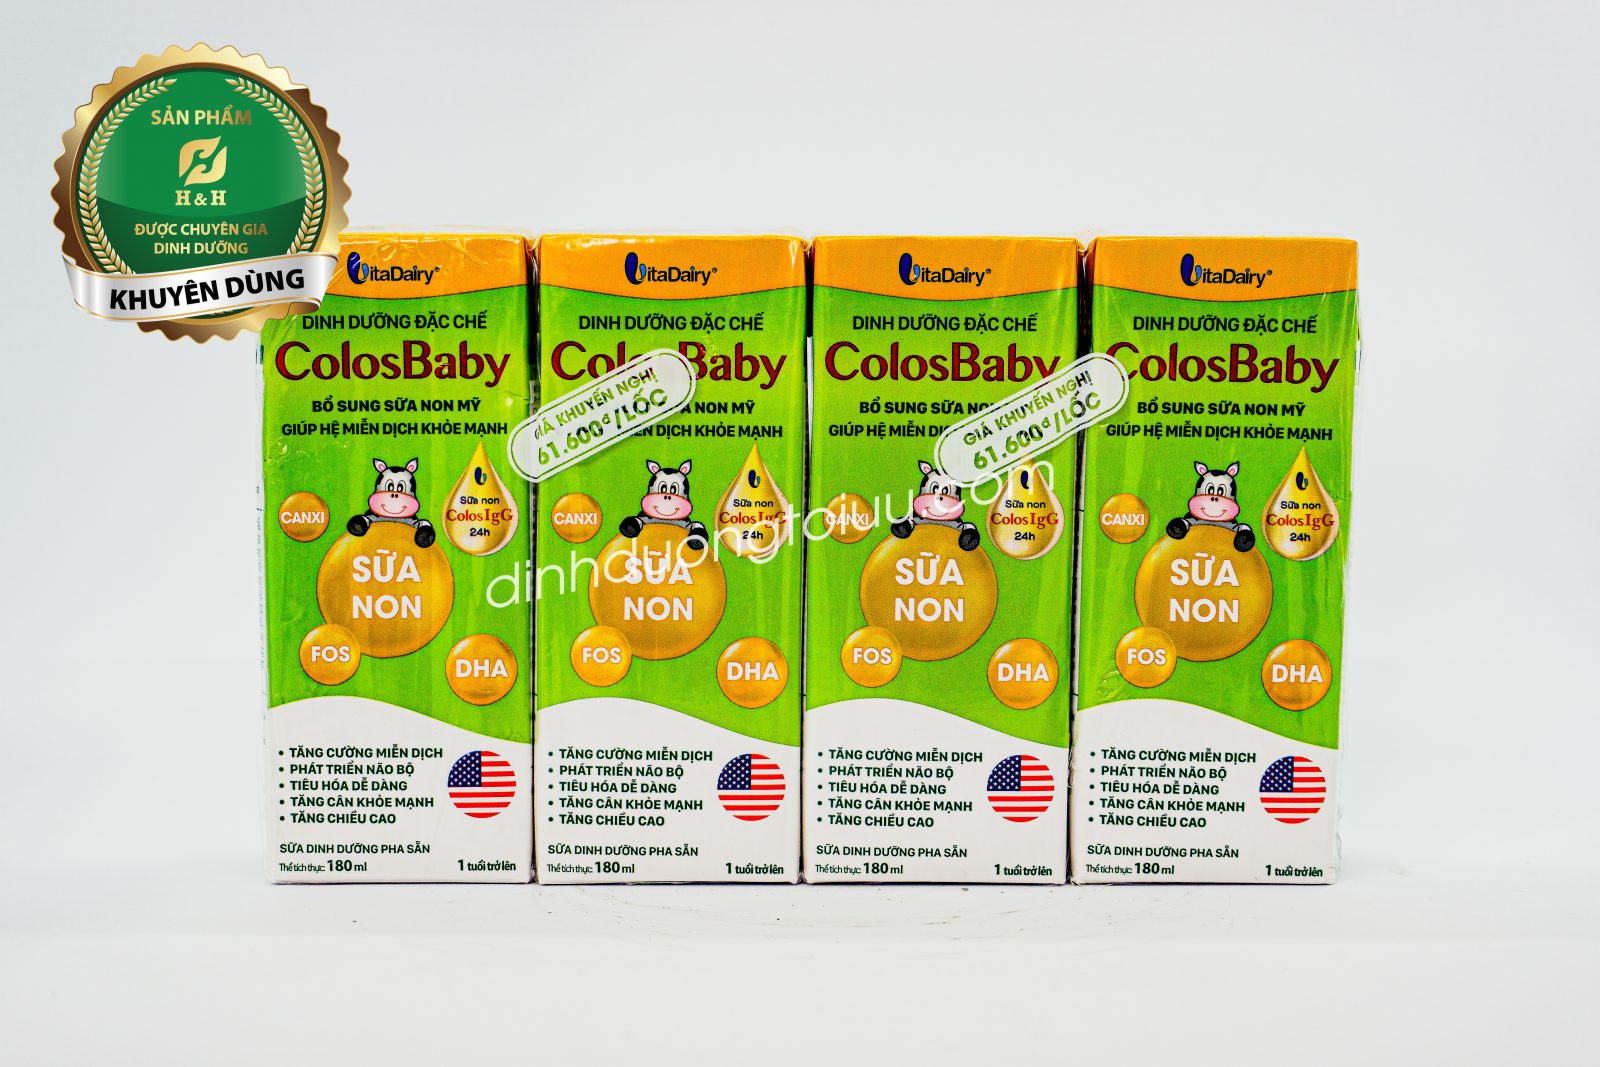 Sữa non ColosBaby pha sẵn của VitaDairy- Tăng cường miễn dịch, phát triển chiều cao ở trẻ